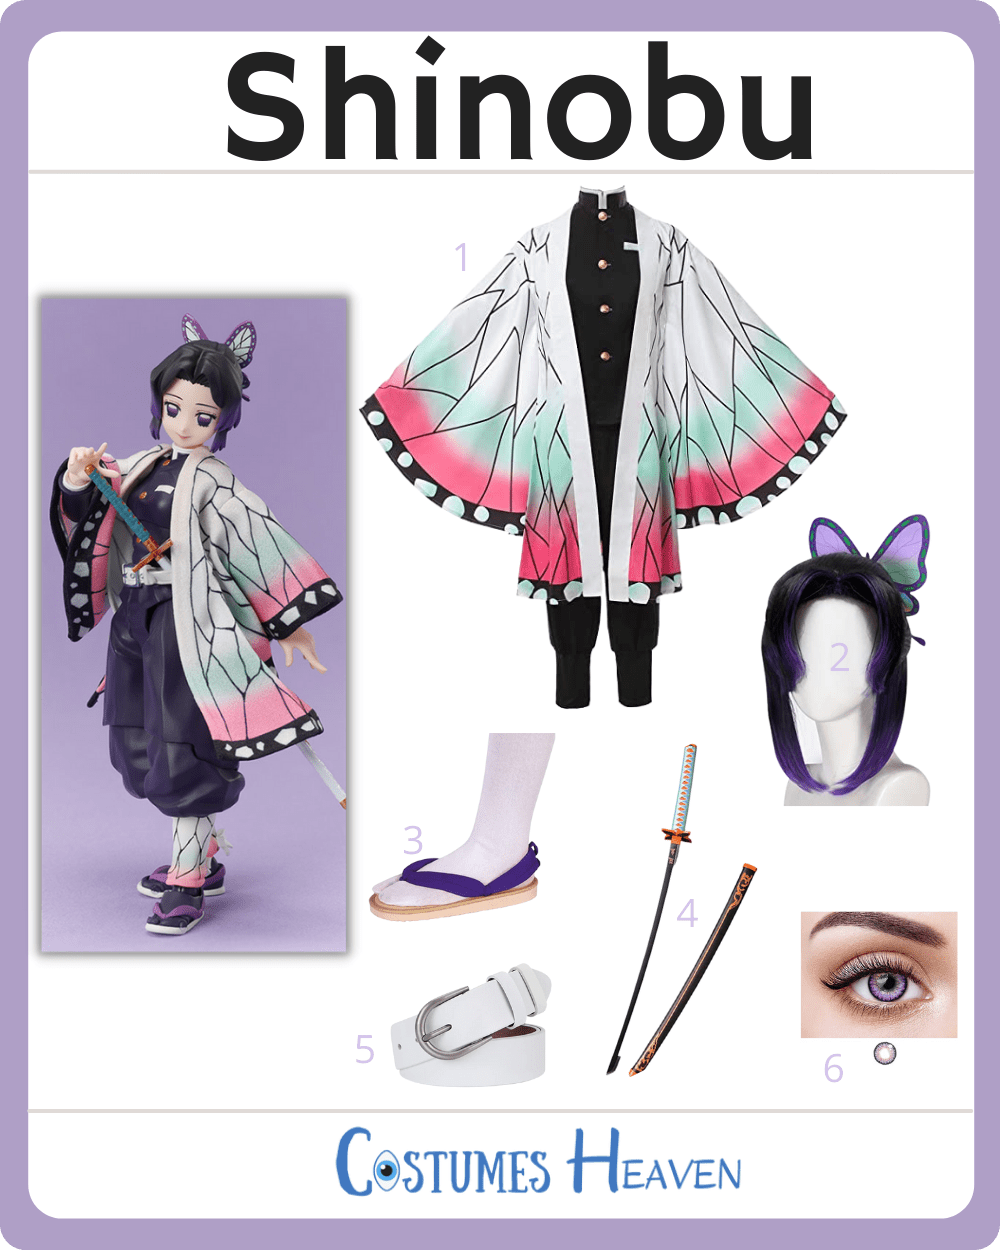 shinobu costume